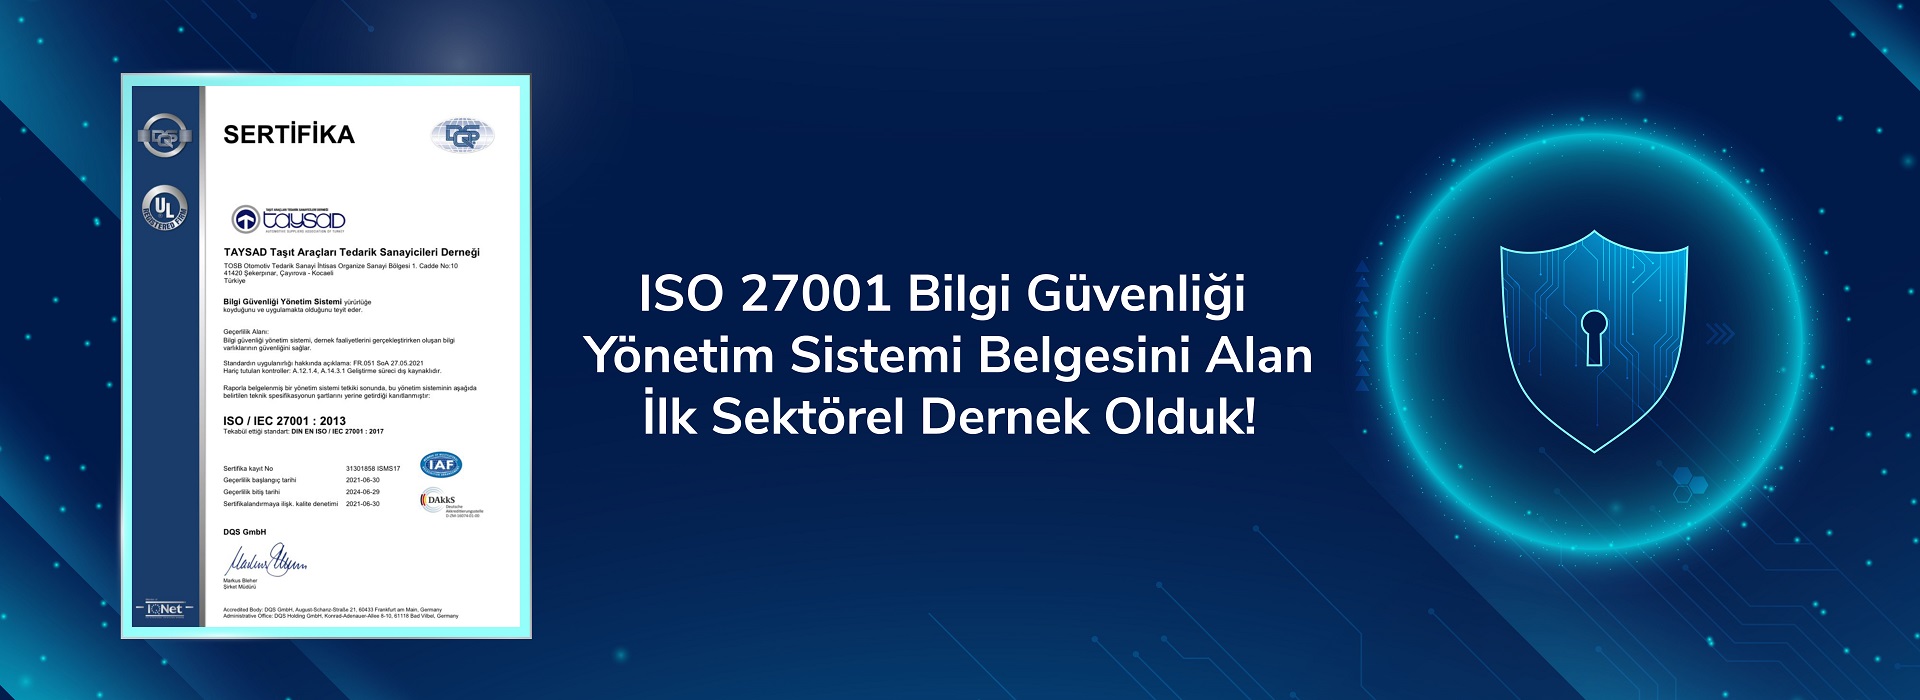 TAYSAD, ISO 27001 Bilgi Güvenliği Yönetim Sistemi Belgesini Alan Türkiye’deki İlk Sektörel Dernek Oldu!